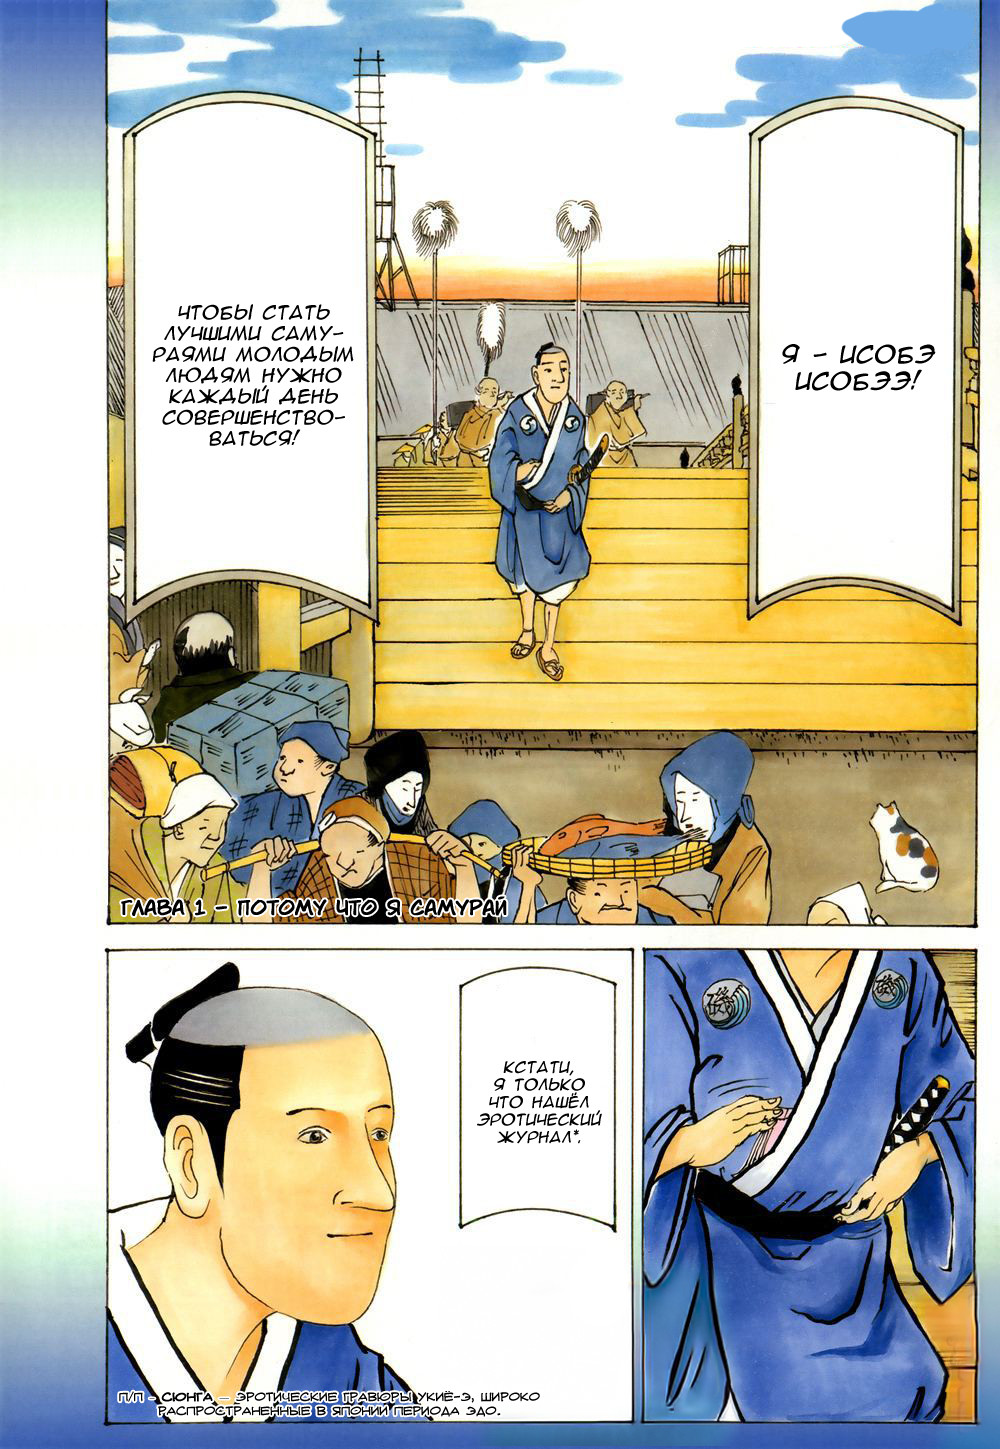 История Исобэ Исобээ 1 - 1 Потому что я самурай